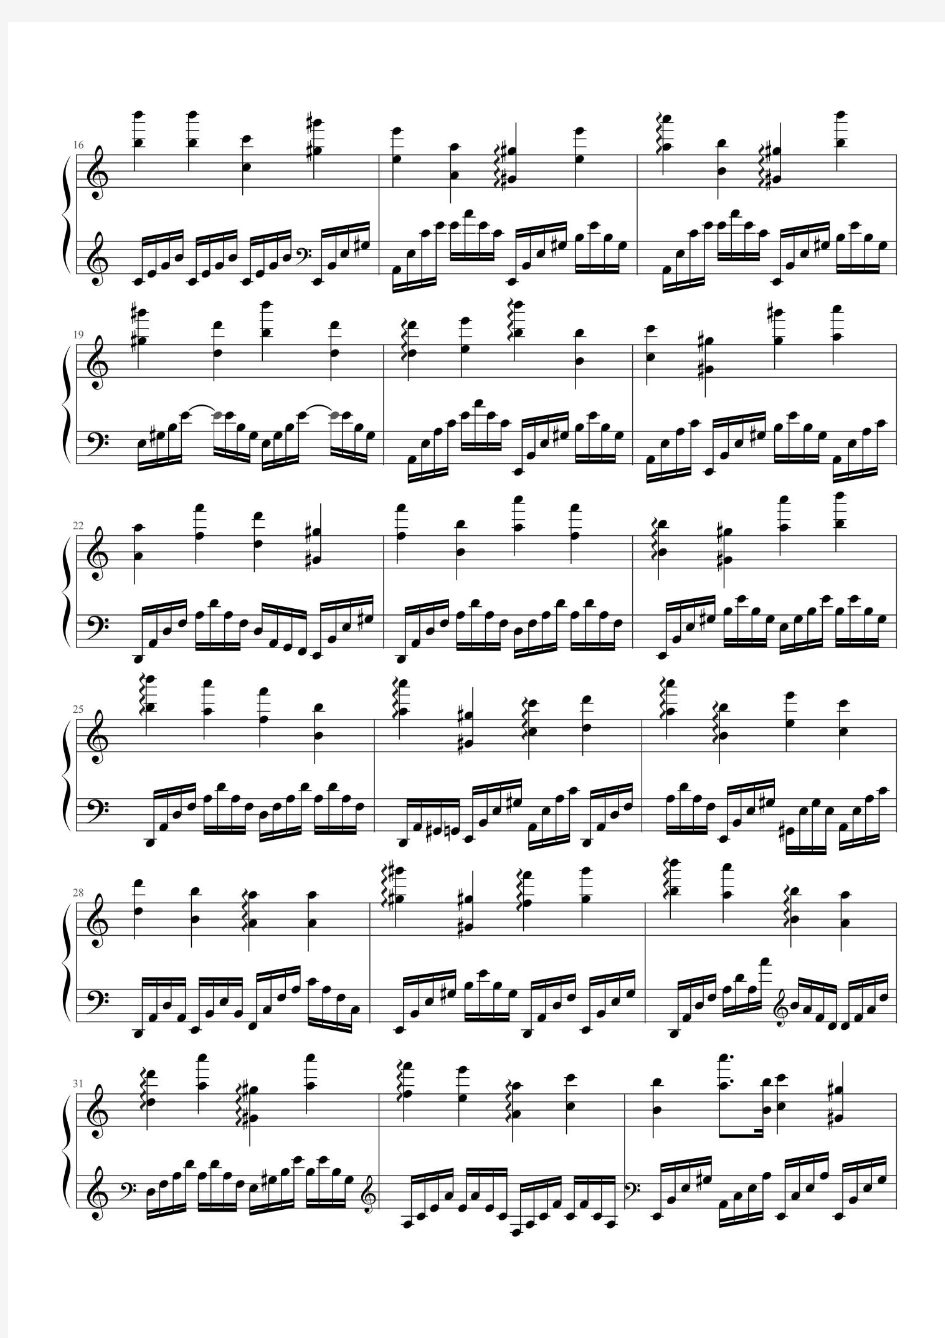 圆周率钢琴谱乐谱(清晰高清打印版)